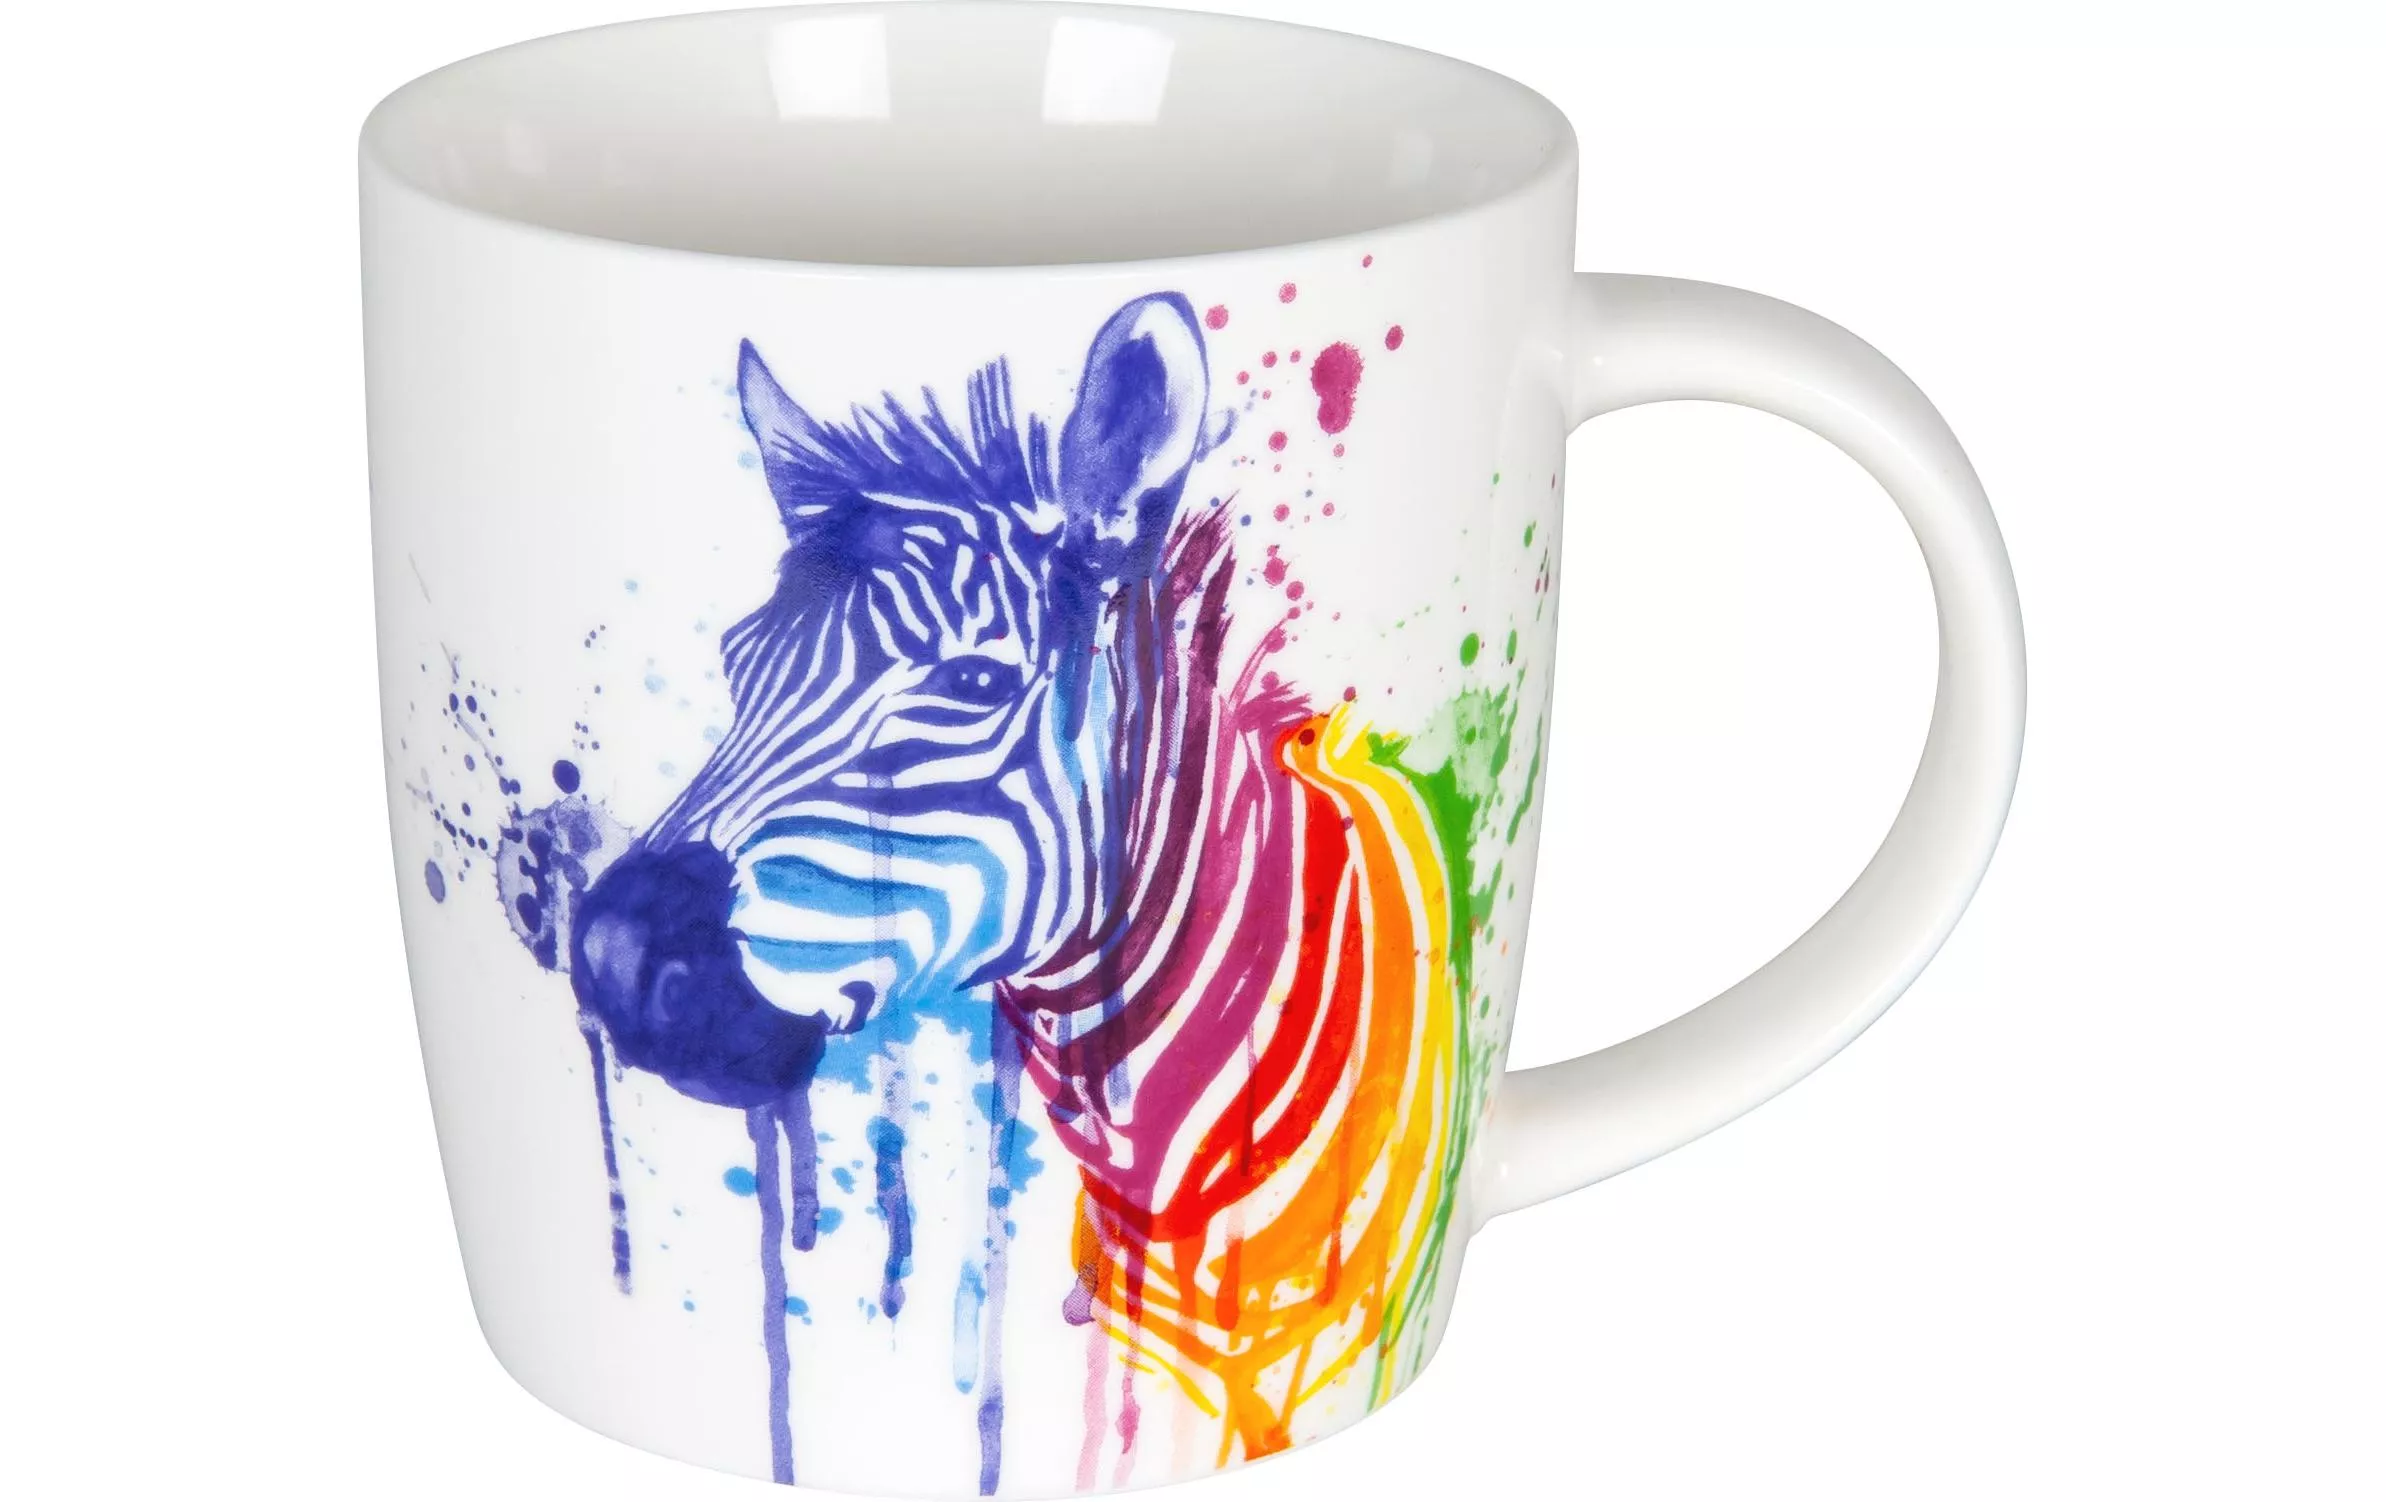 Tasse à café Zebra watercolored Animals 350 ml, Blanc